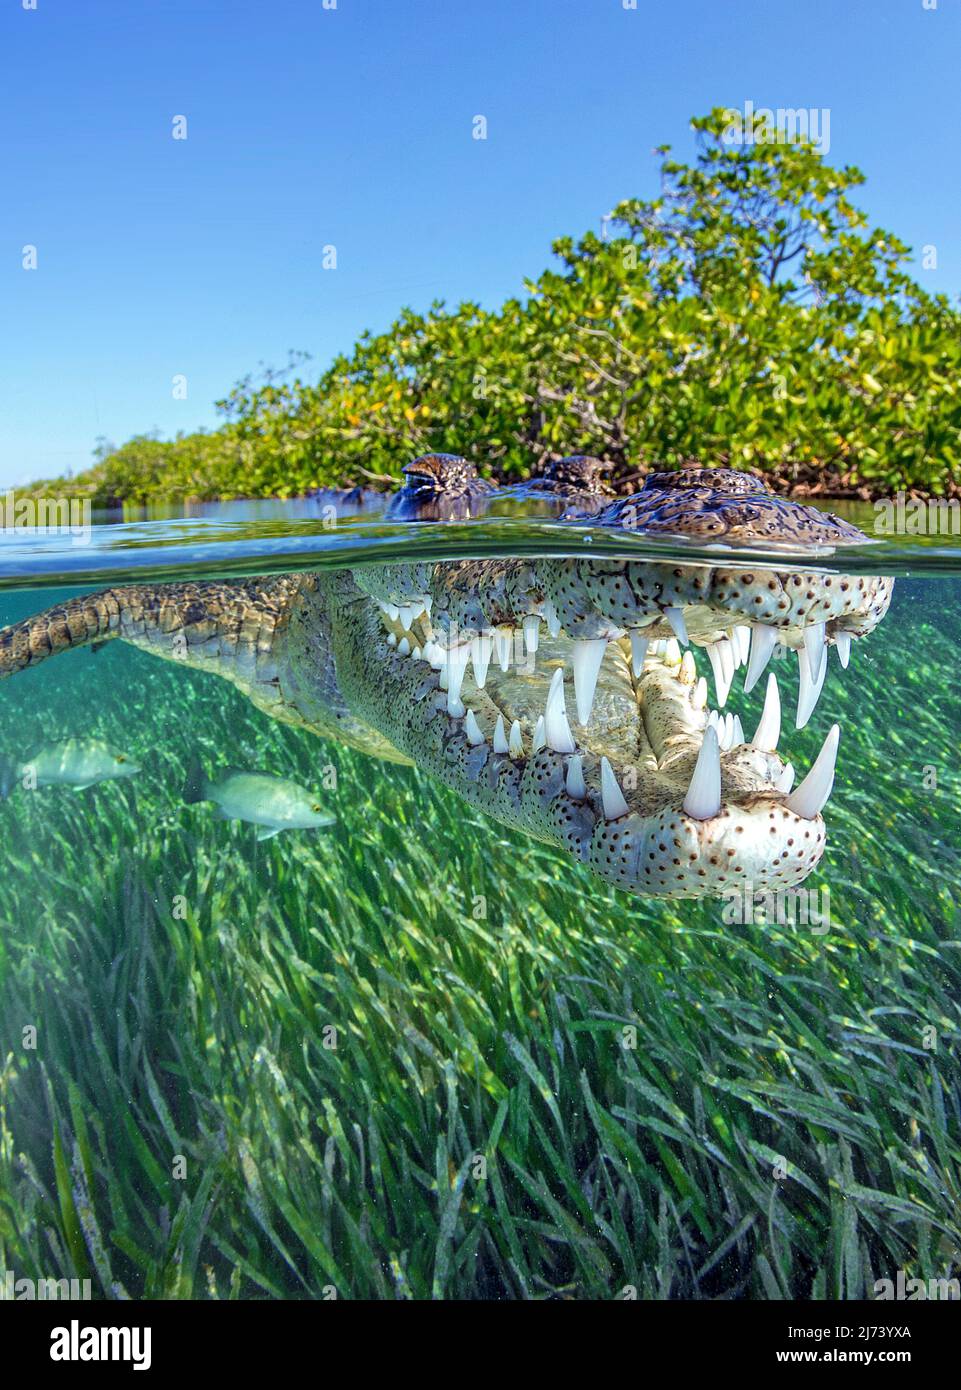 Cocodrilo americano (Crocodylus acutus), imagen dividida, sobre debajo, Jardines de la Reina, Cuba, Mar Caribe, Caribe Foto de stock